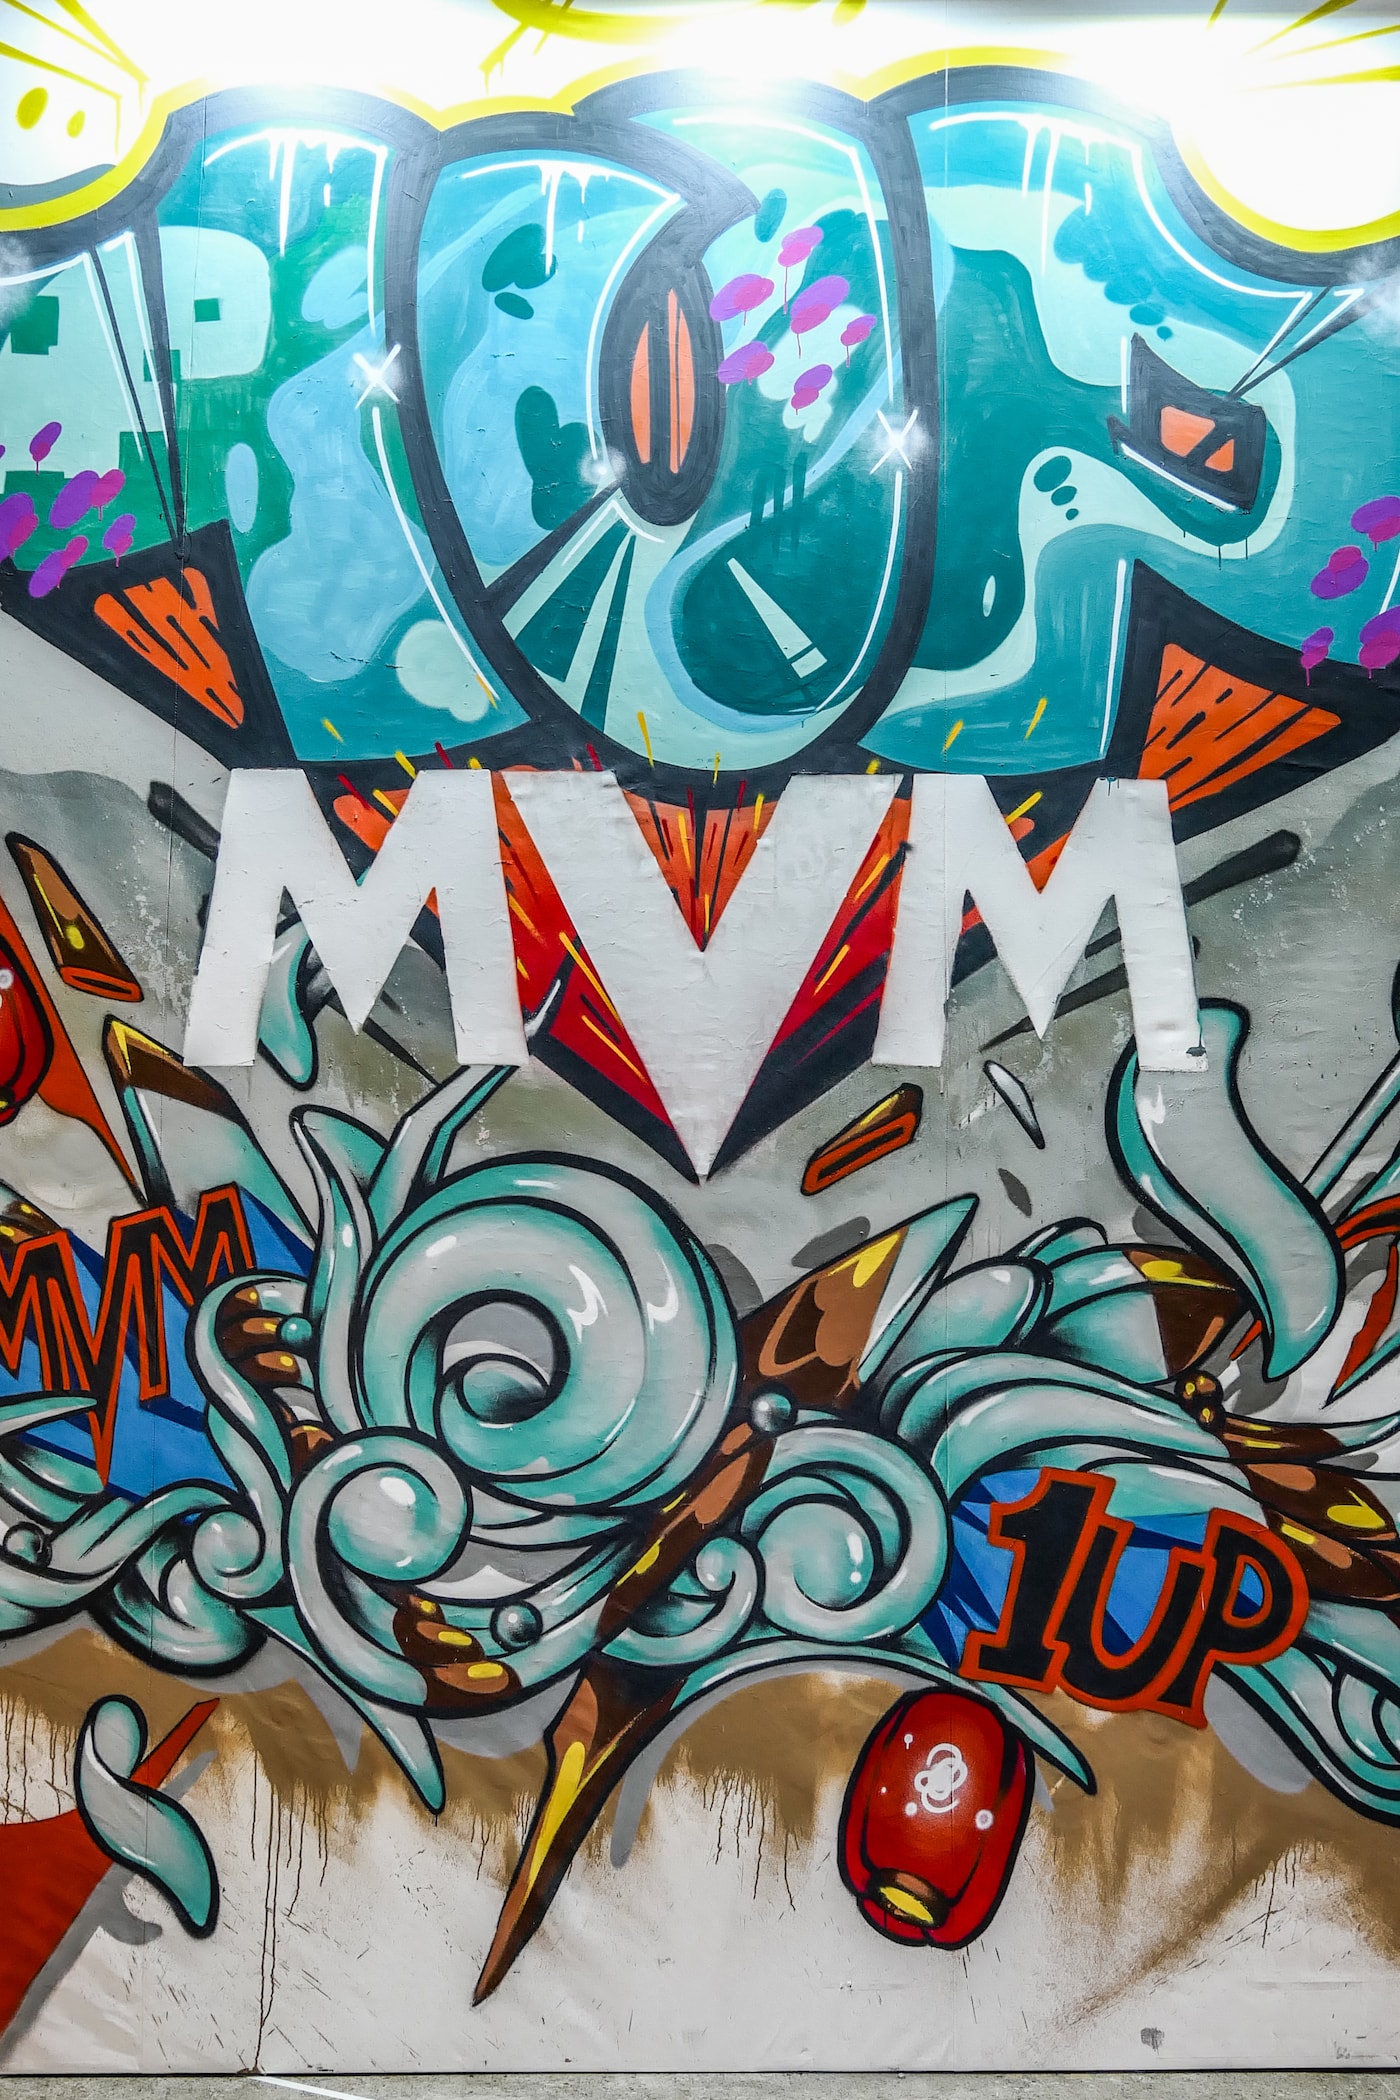 柏林塗鴉團隊 1UP 攜手創意視覺廠牌 MVM 打造主題展覽